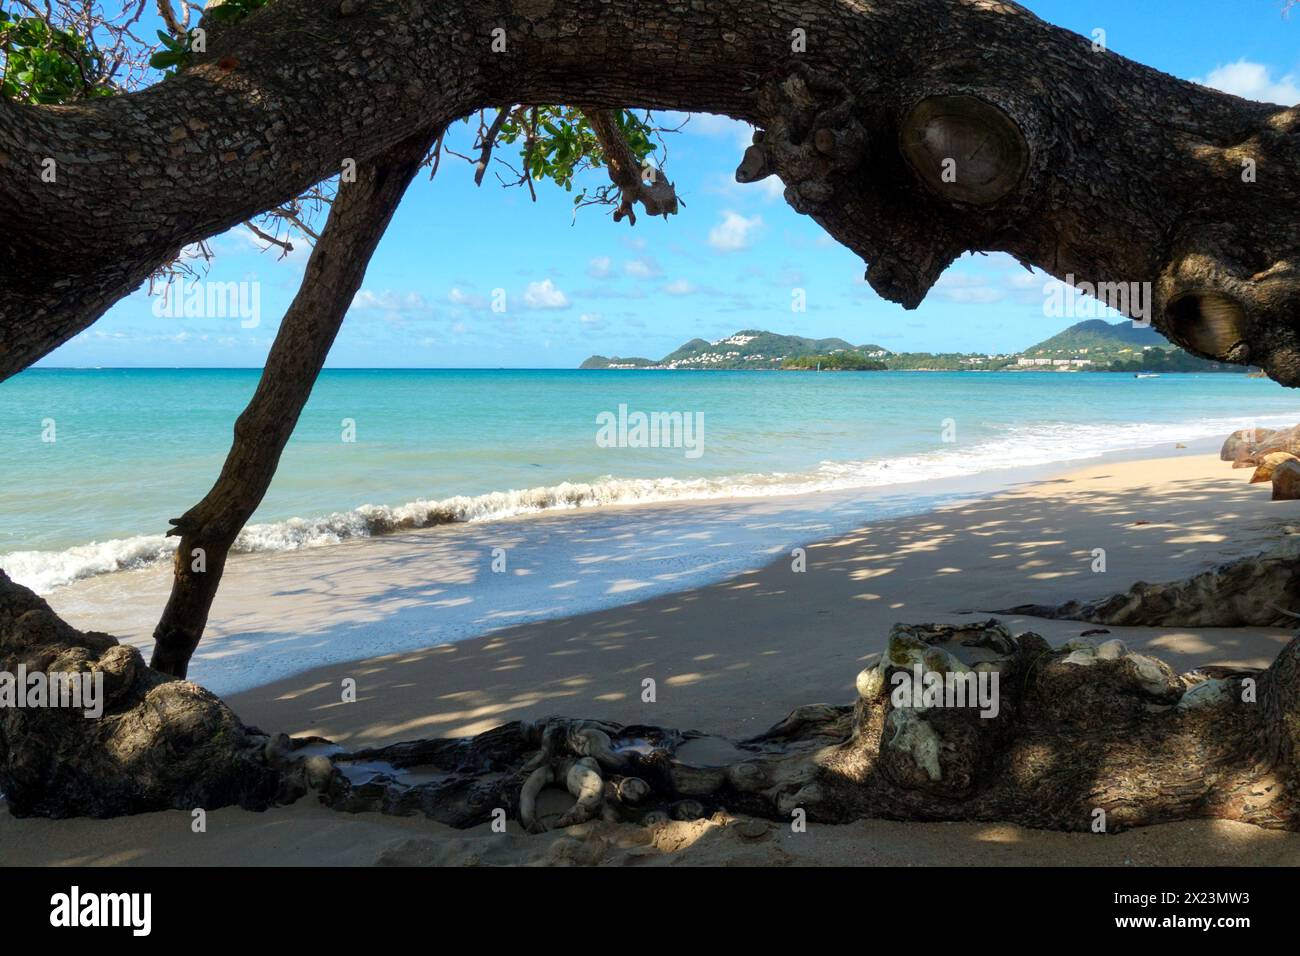 Mer bleu pâle et plage de sable visible sous une branche d'arbre feuillu sur la côte de l'île caribéenne de Sainte-Lucie. Banque D'Images